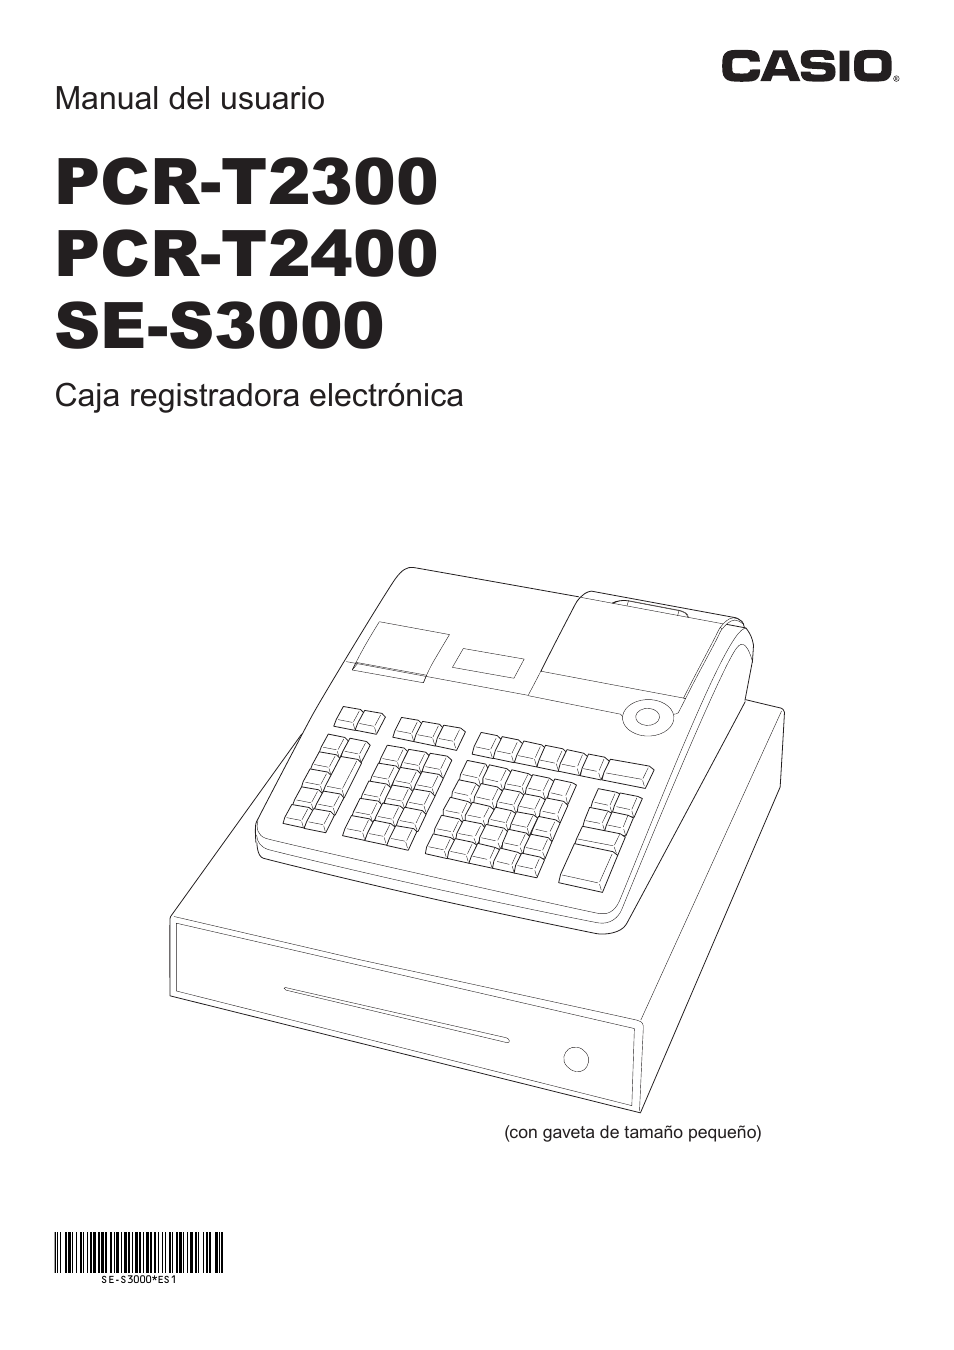 préstamo Inflar salida Casio PCR-T2300 Manual del usuario | Páginas: 104 | También para:  PCR-T2400, PCR-T500, PCR-T520